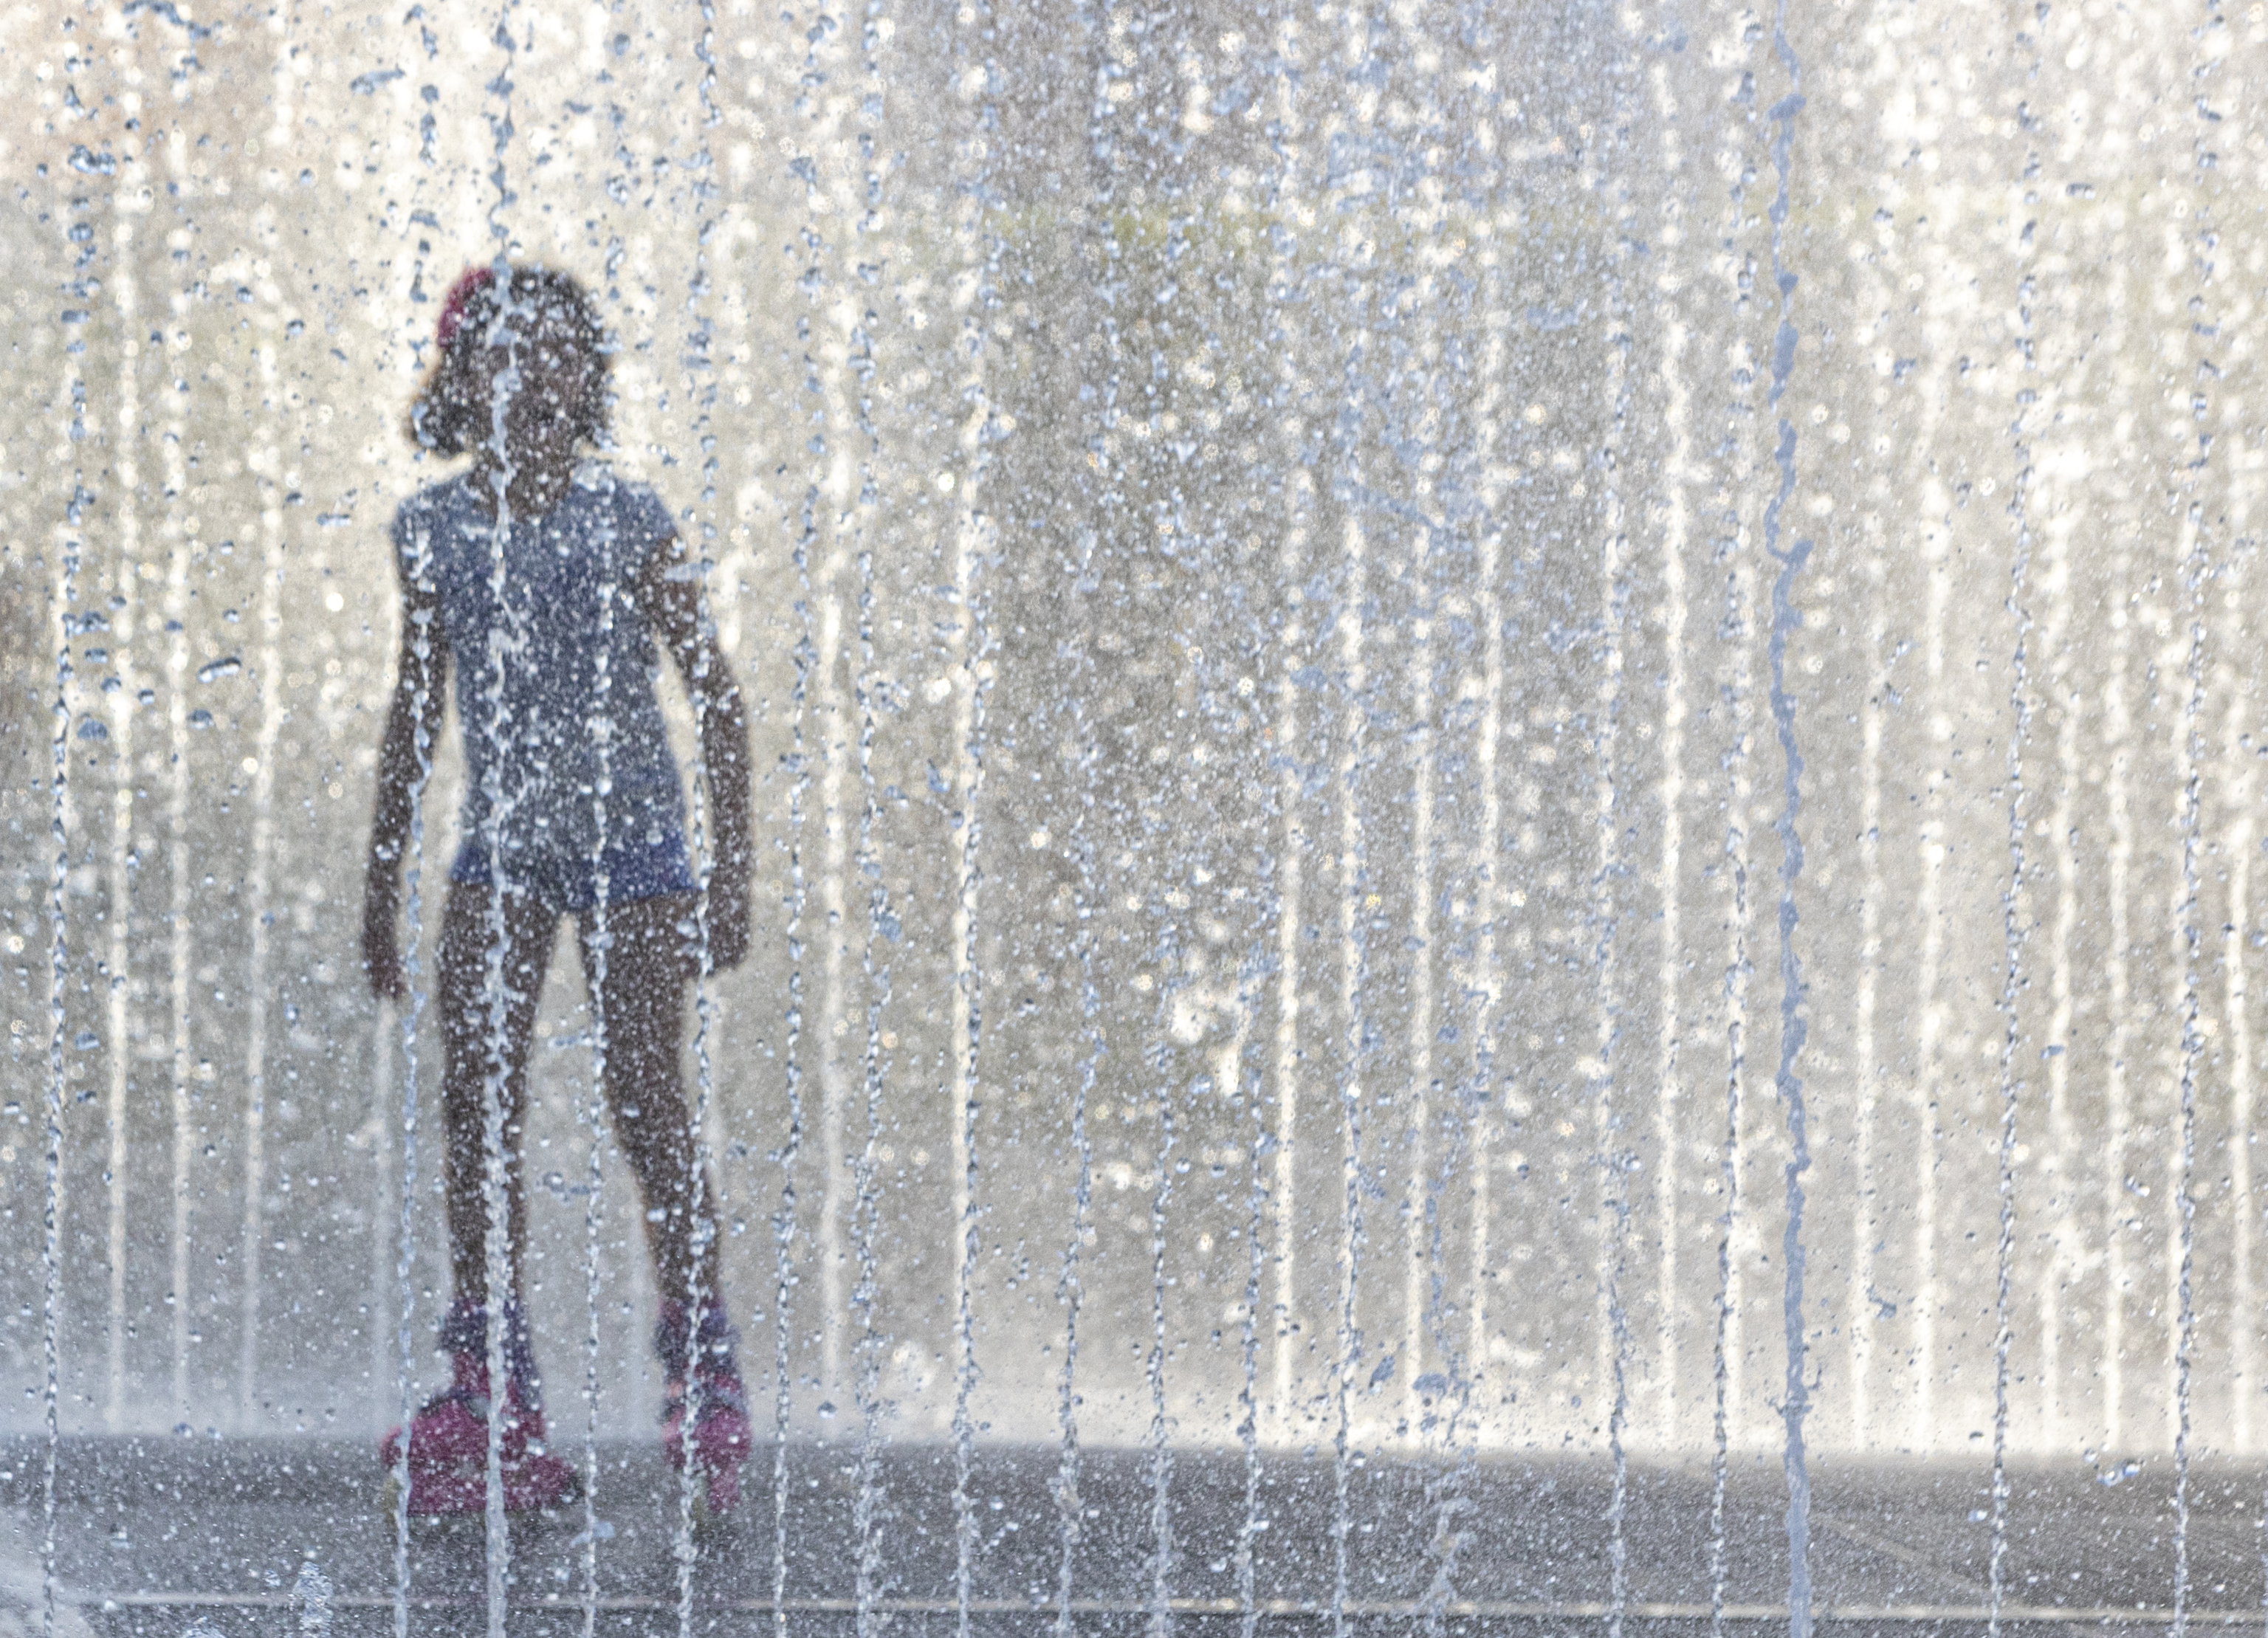 Un joven se refresca en una fuente durante una ola de calor.